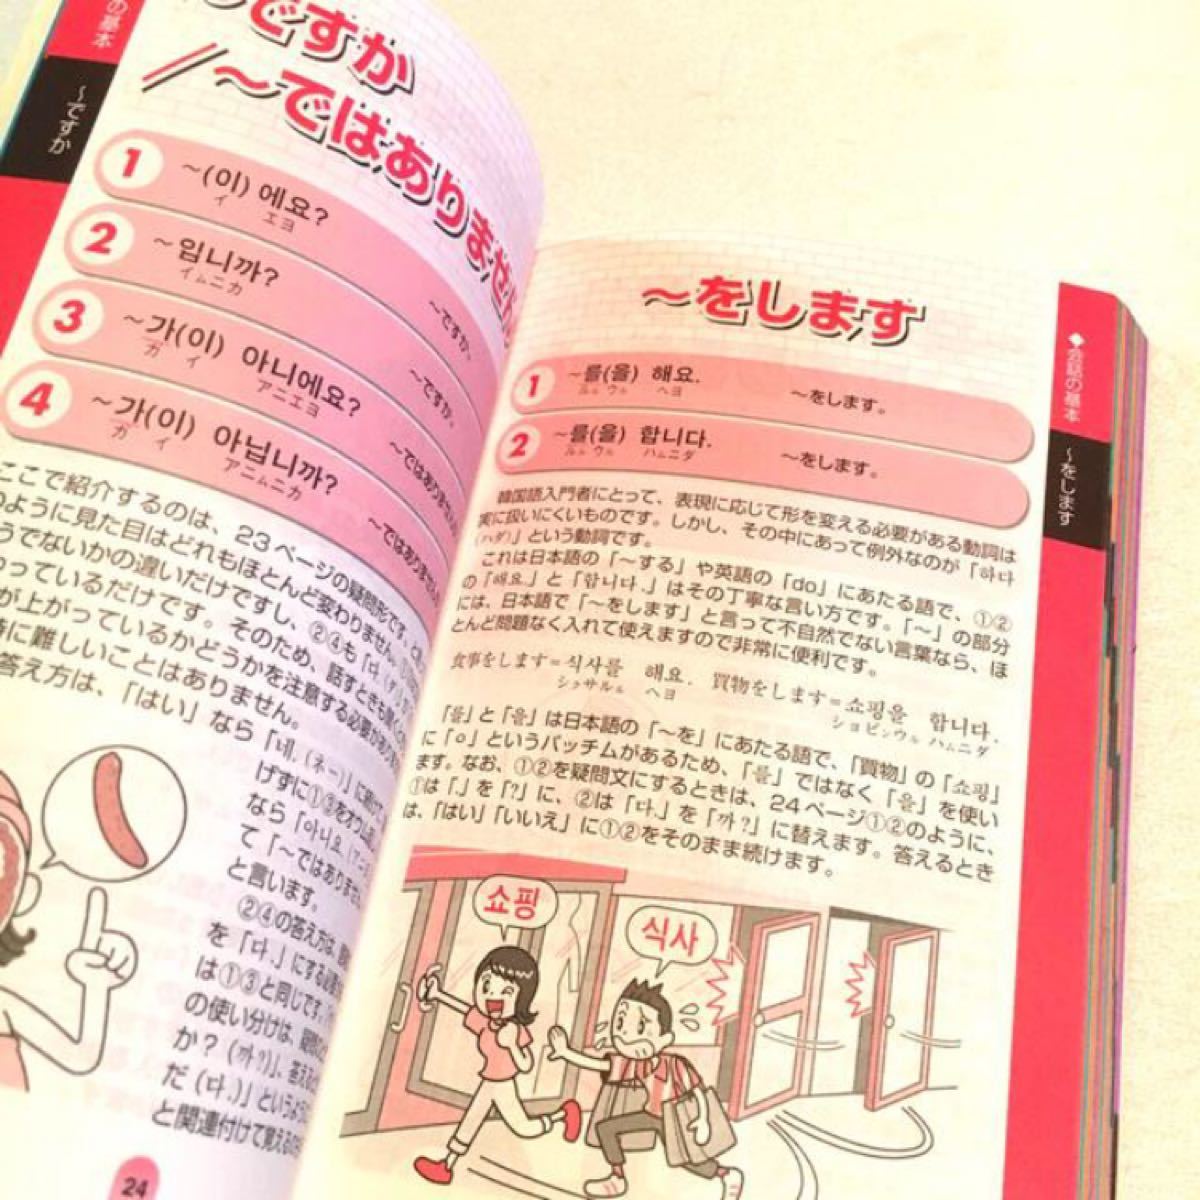 もって歩く韓国語会話 book 